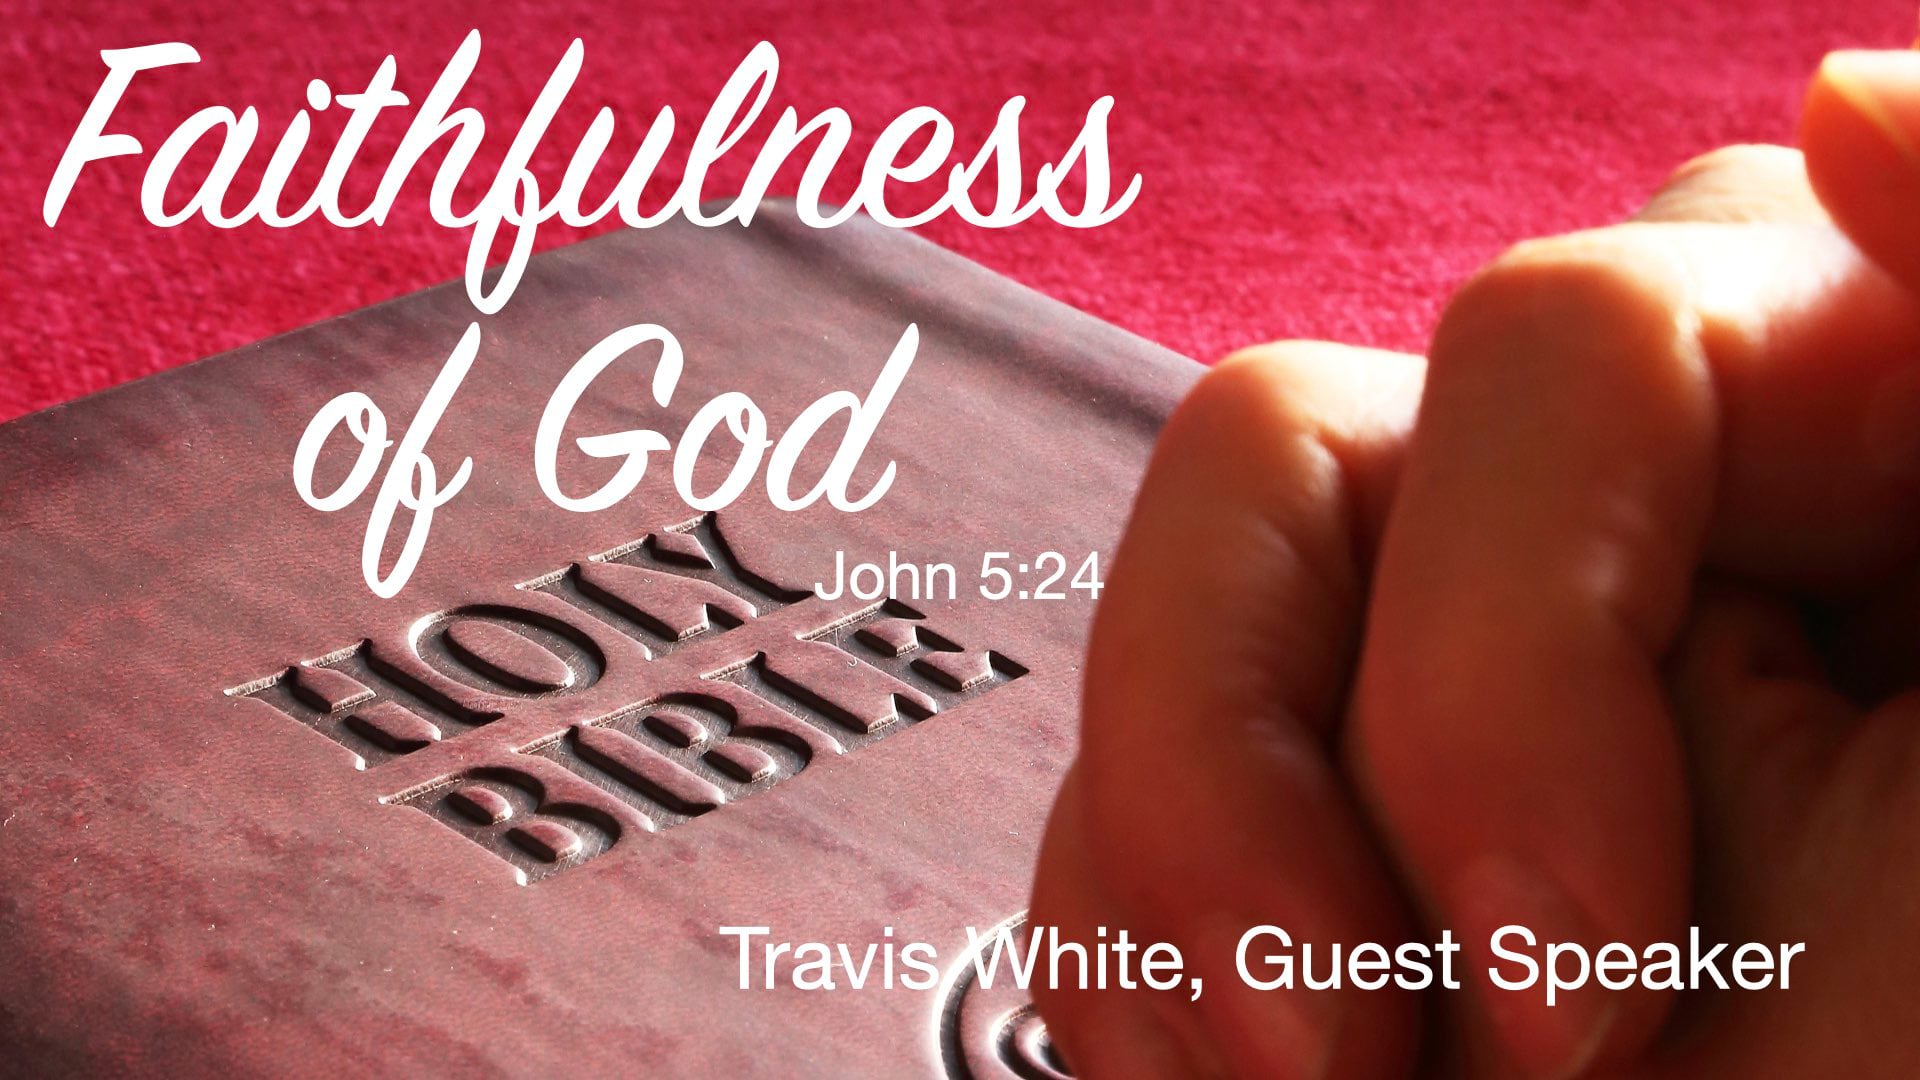 Oct 23, 2022 Faithfulness of God, Travis White